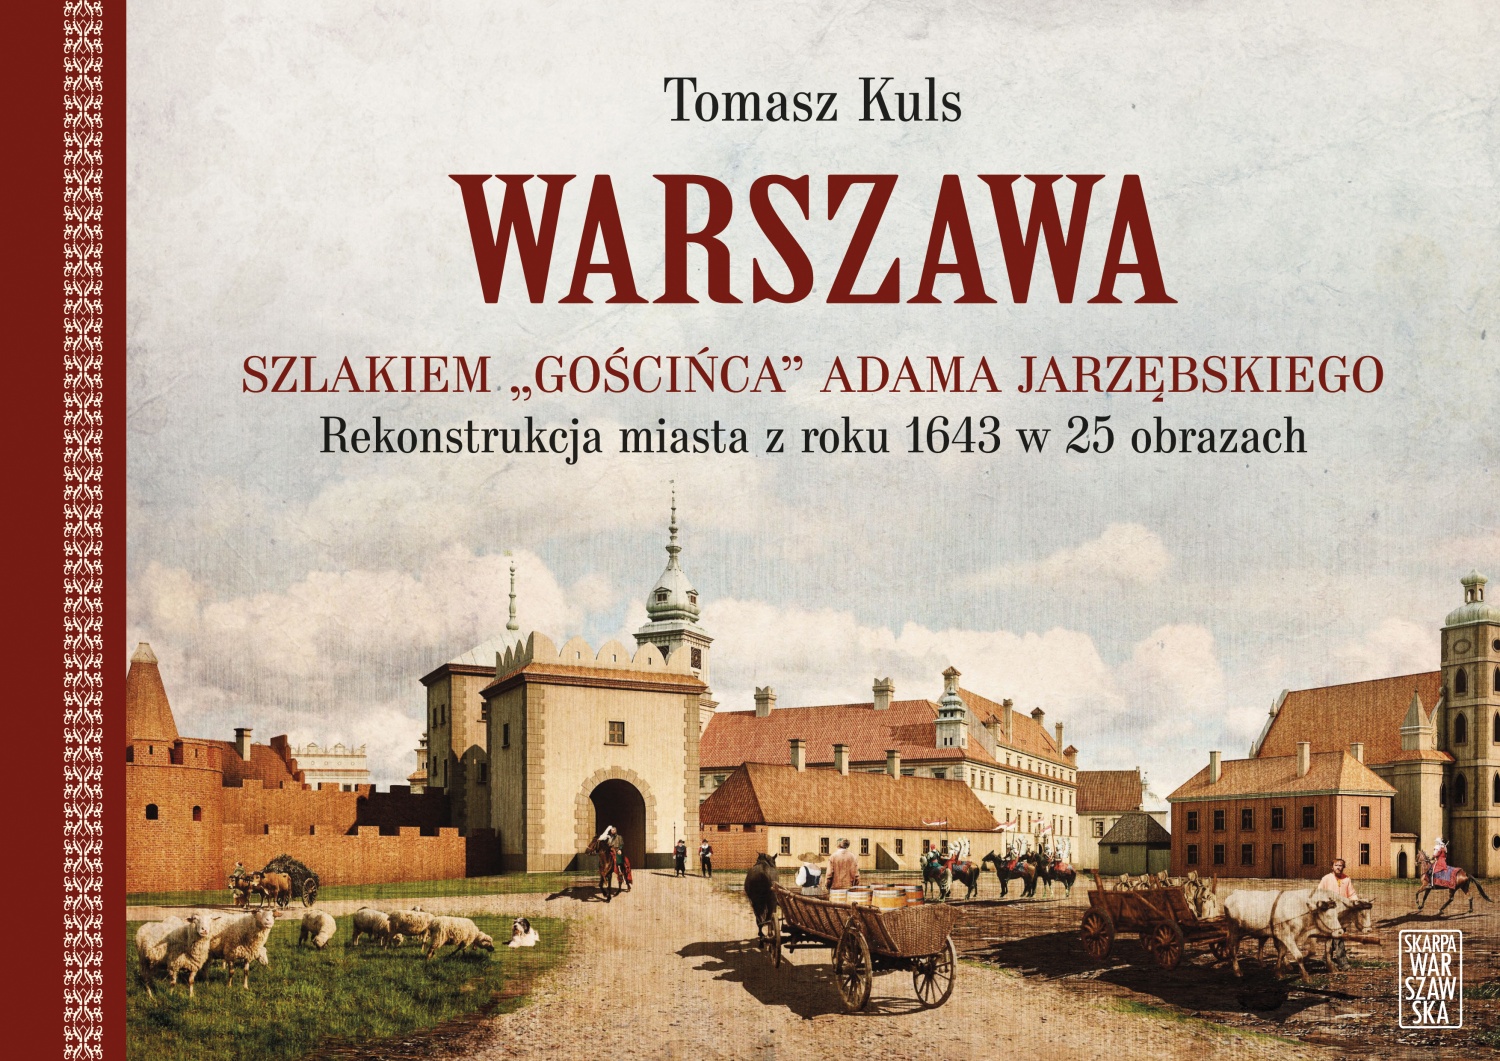 Warszawa Szlakiem "Gościńca" Adama Jarzębskiego Rekonstrukcja miasta z 1943 (T.Kuls)